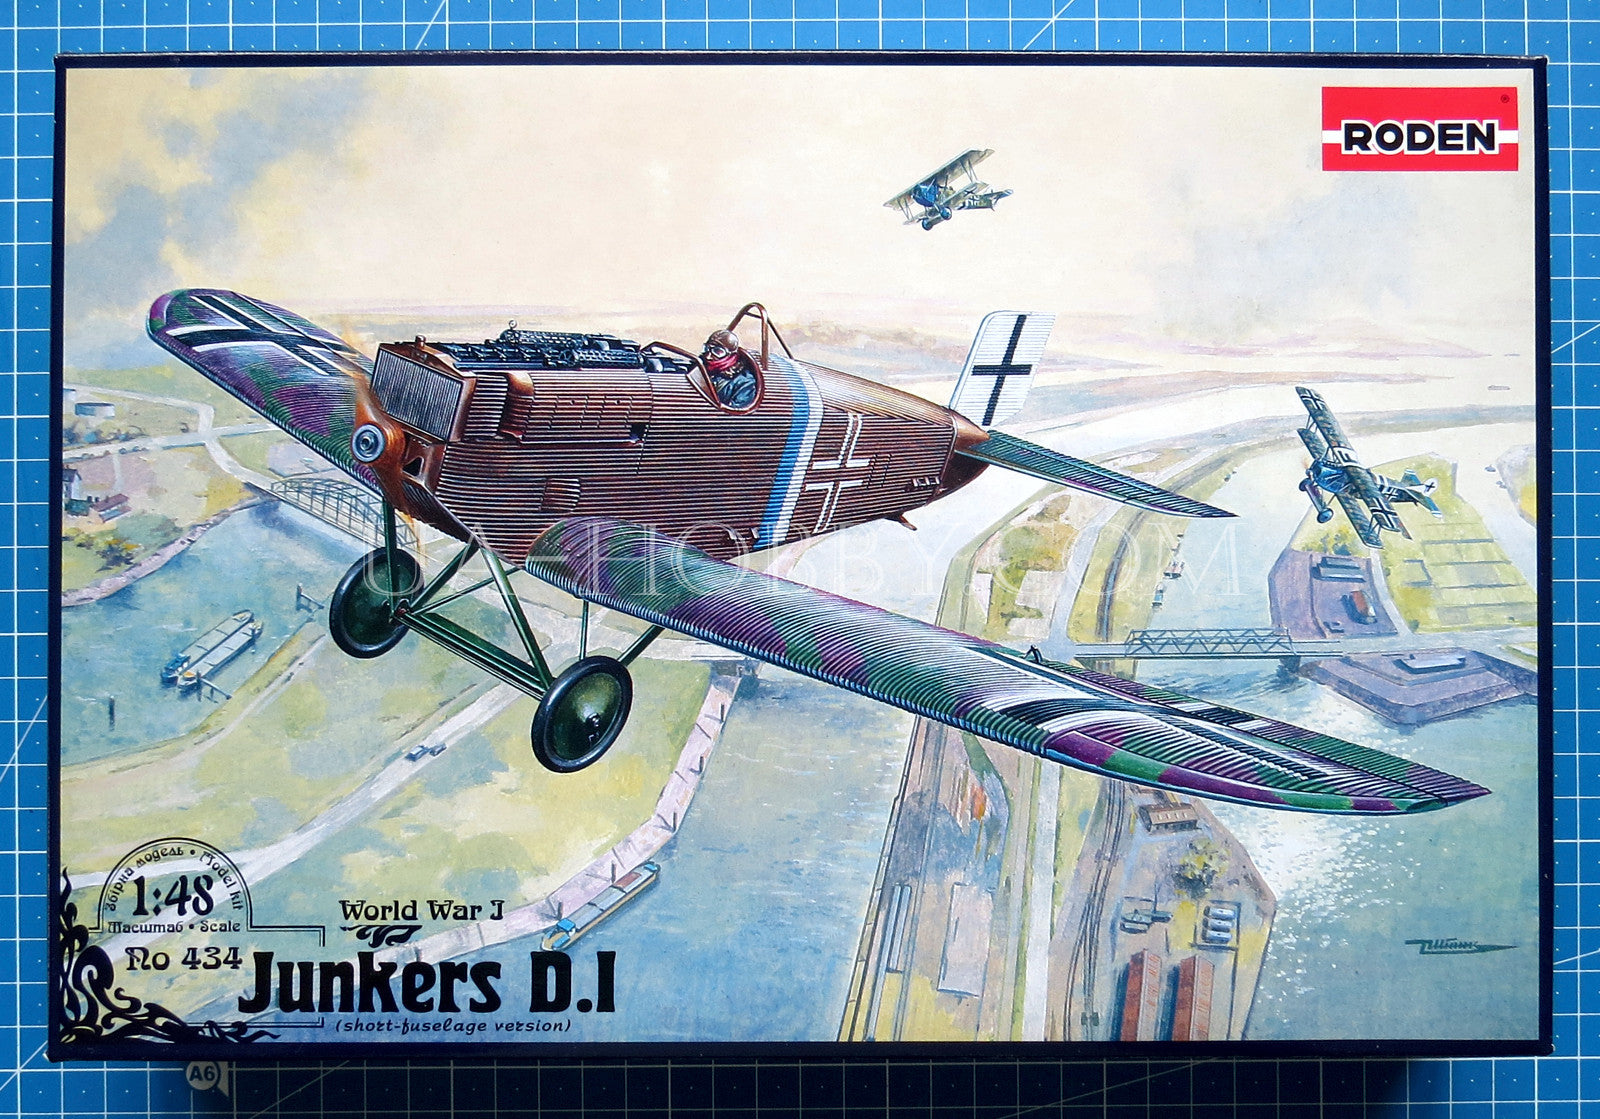 1/48 Junkers D.I short-fuselage version. Roden 434